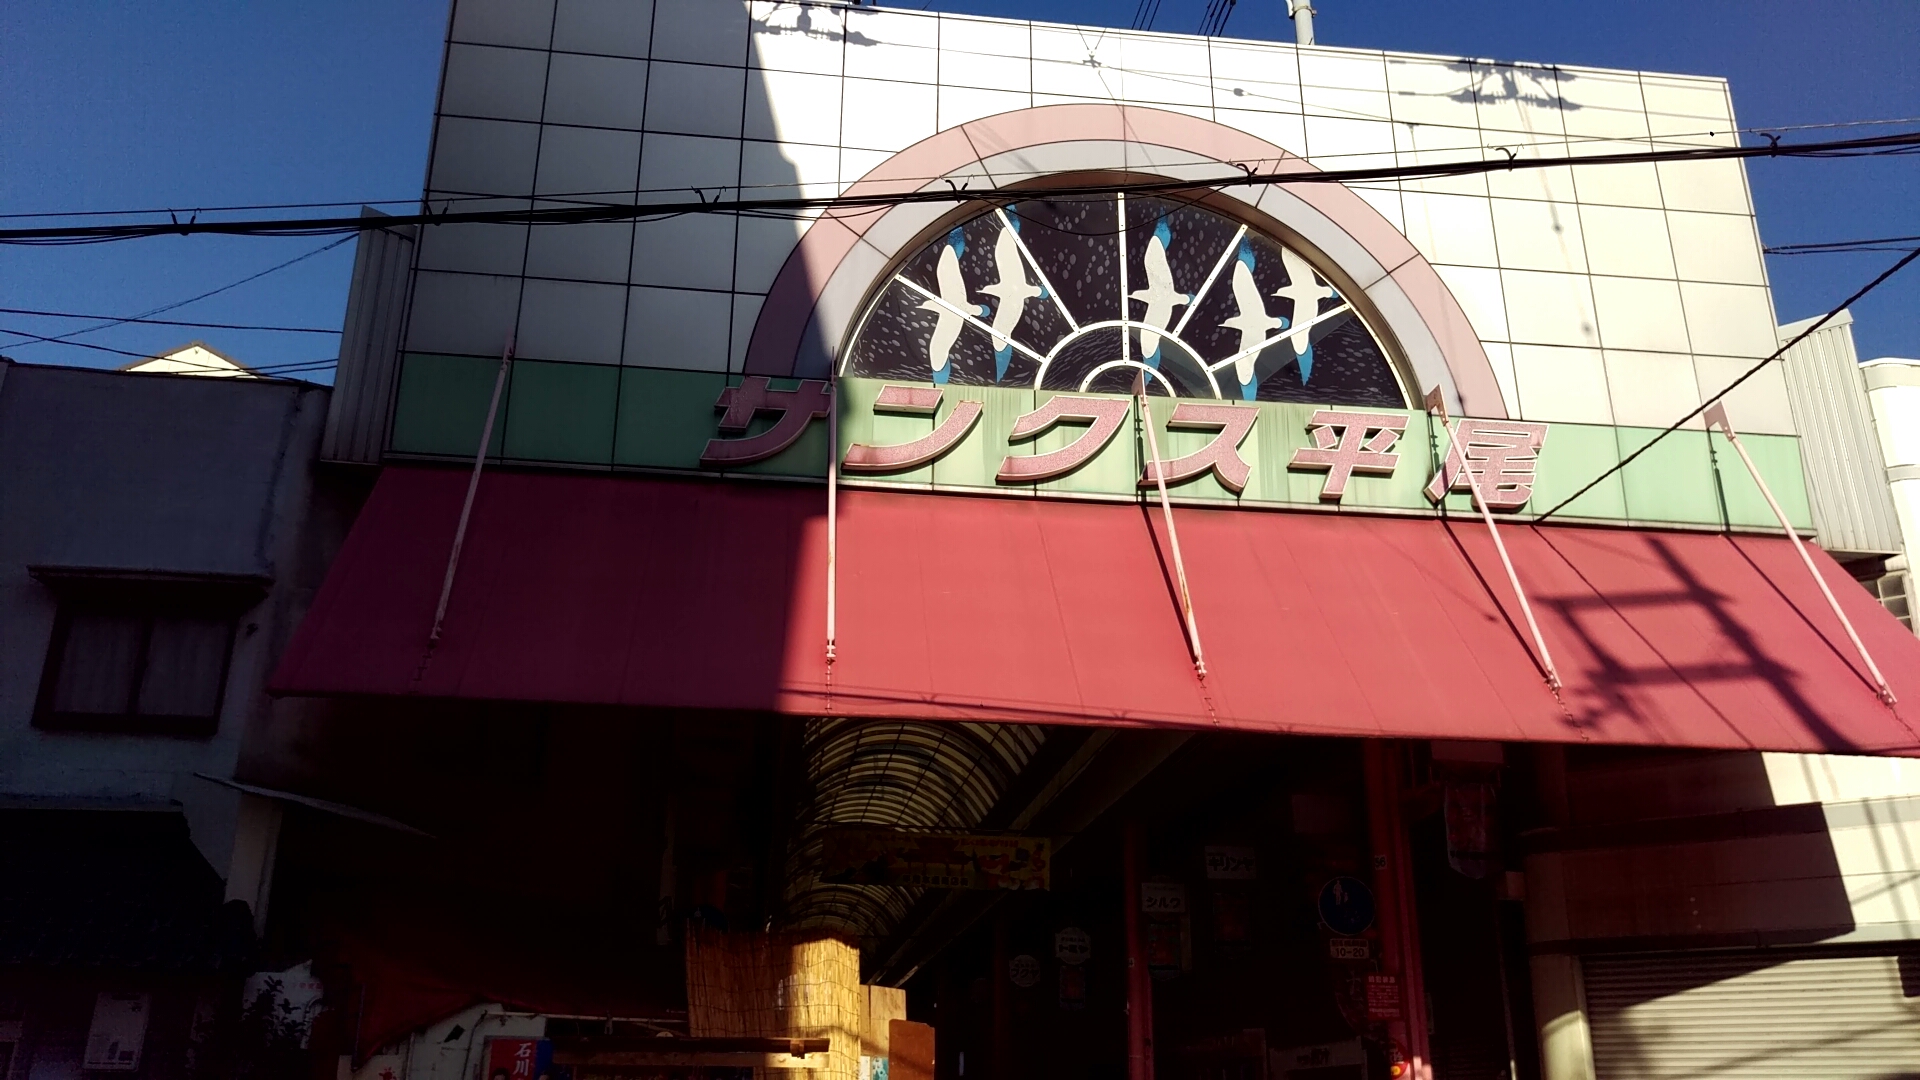 サンクス平尾。この商店街に沖縄食材のお店や五色屋さんがある